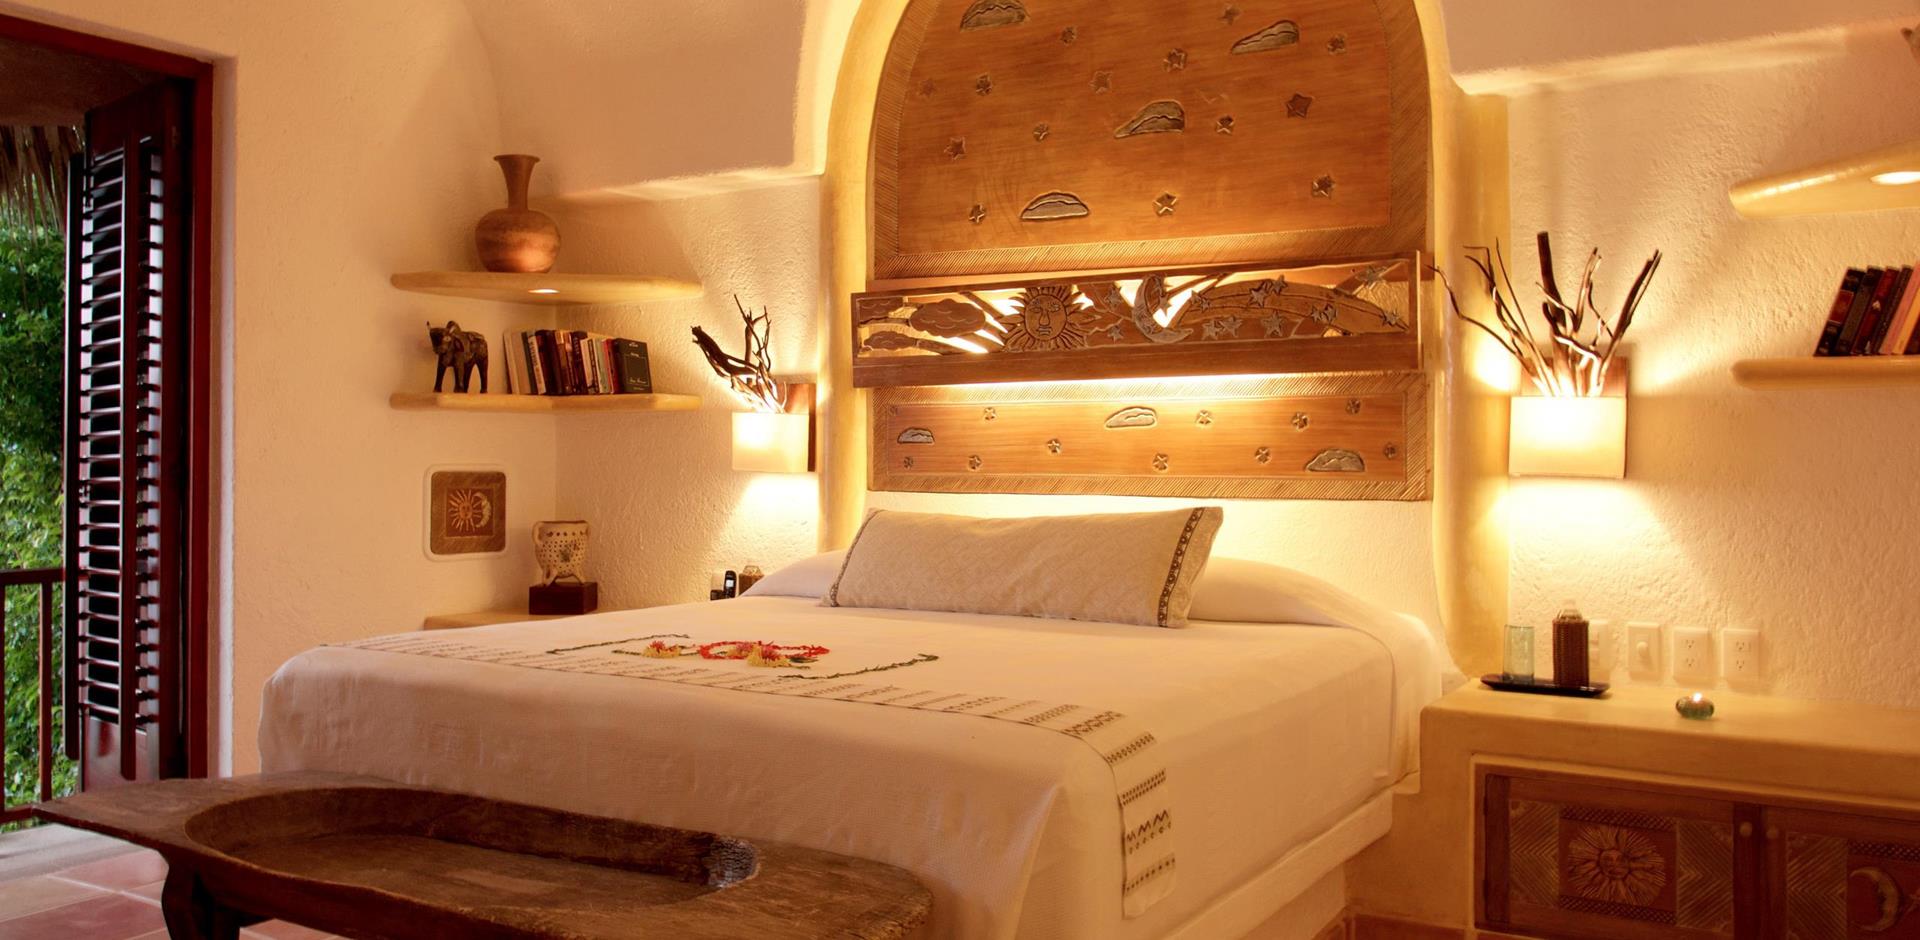 Bedroom, La Casa Que Canta, Mexico